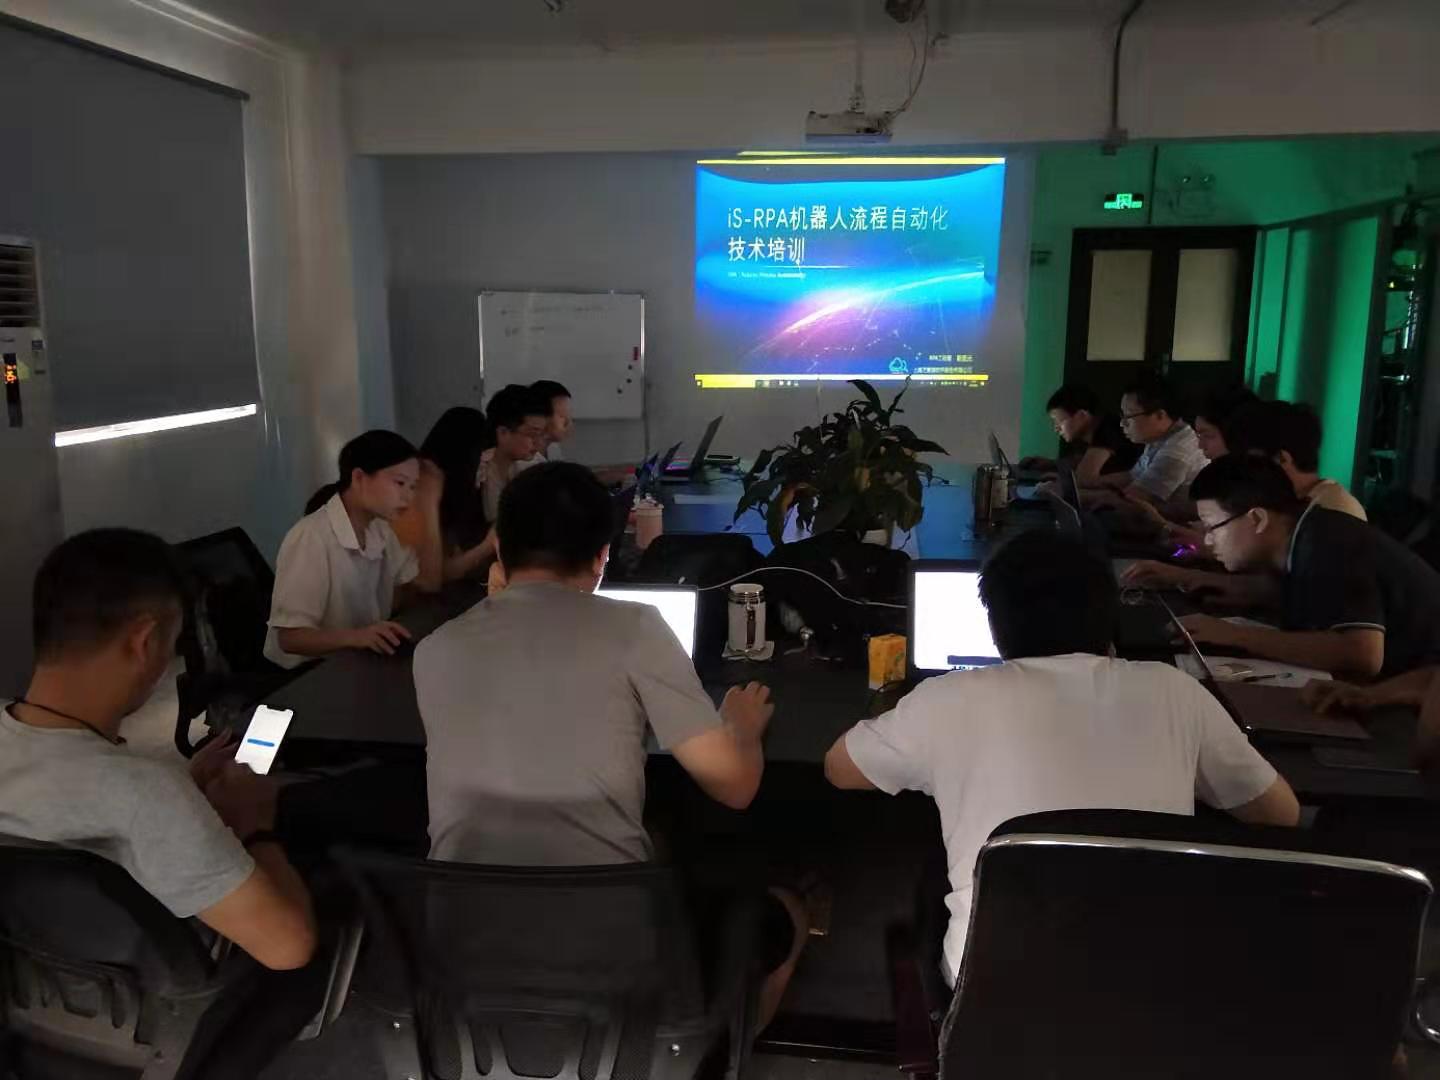 iS-RPA 技术认证培训 - 广州 20190803 班 - 培训开始 课程名称：技术认证培训